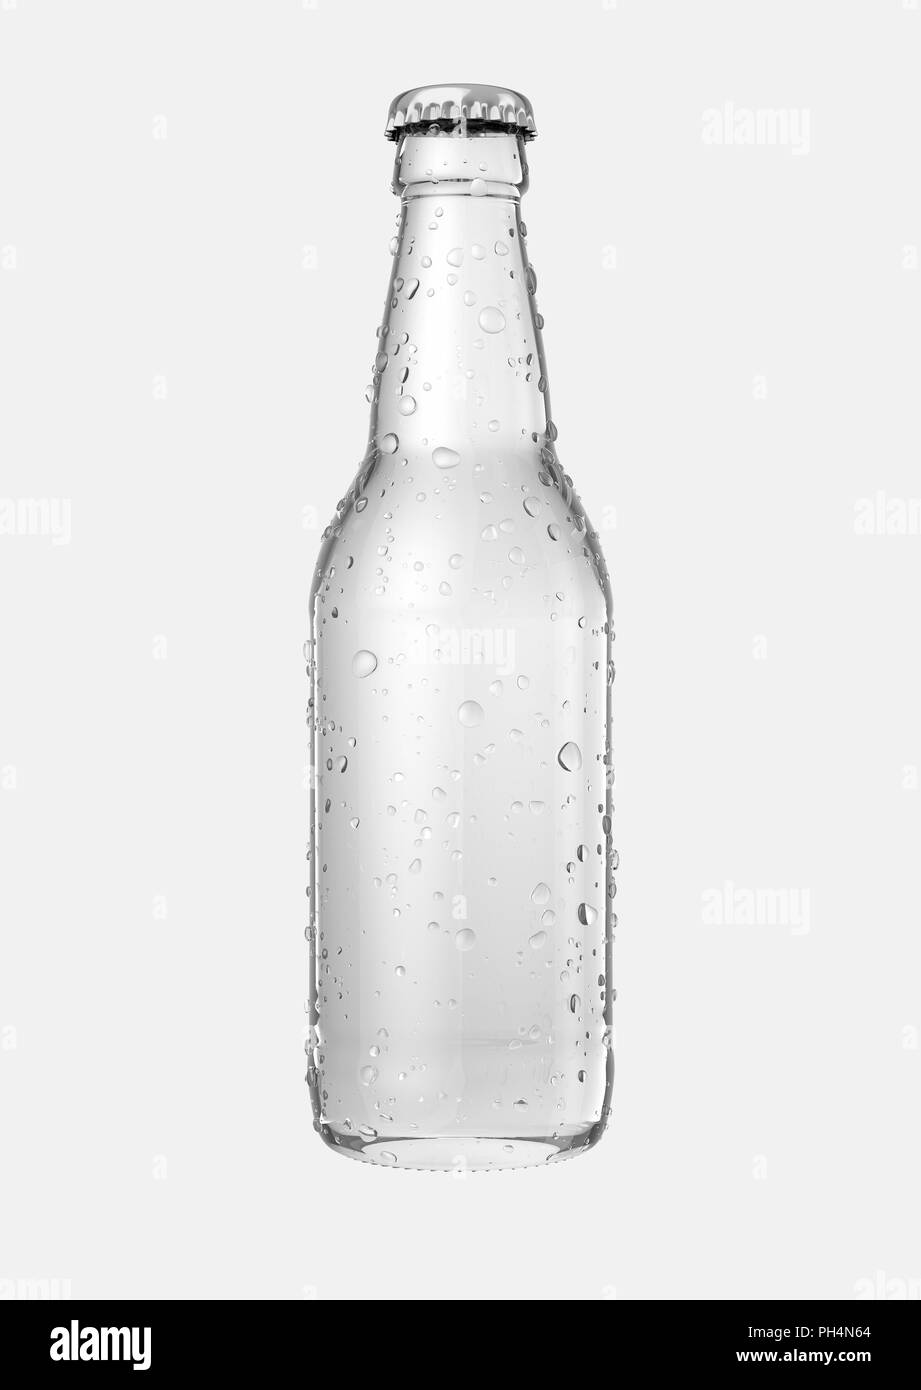 Ein klares Glas Bier Flasche mit Tröpfchen von Kondensation auf einer isolierten weißen studio Hintergrund - 3D-Rendering Stockfoto